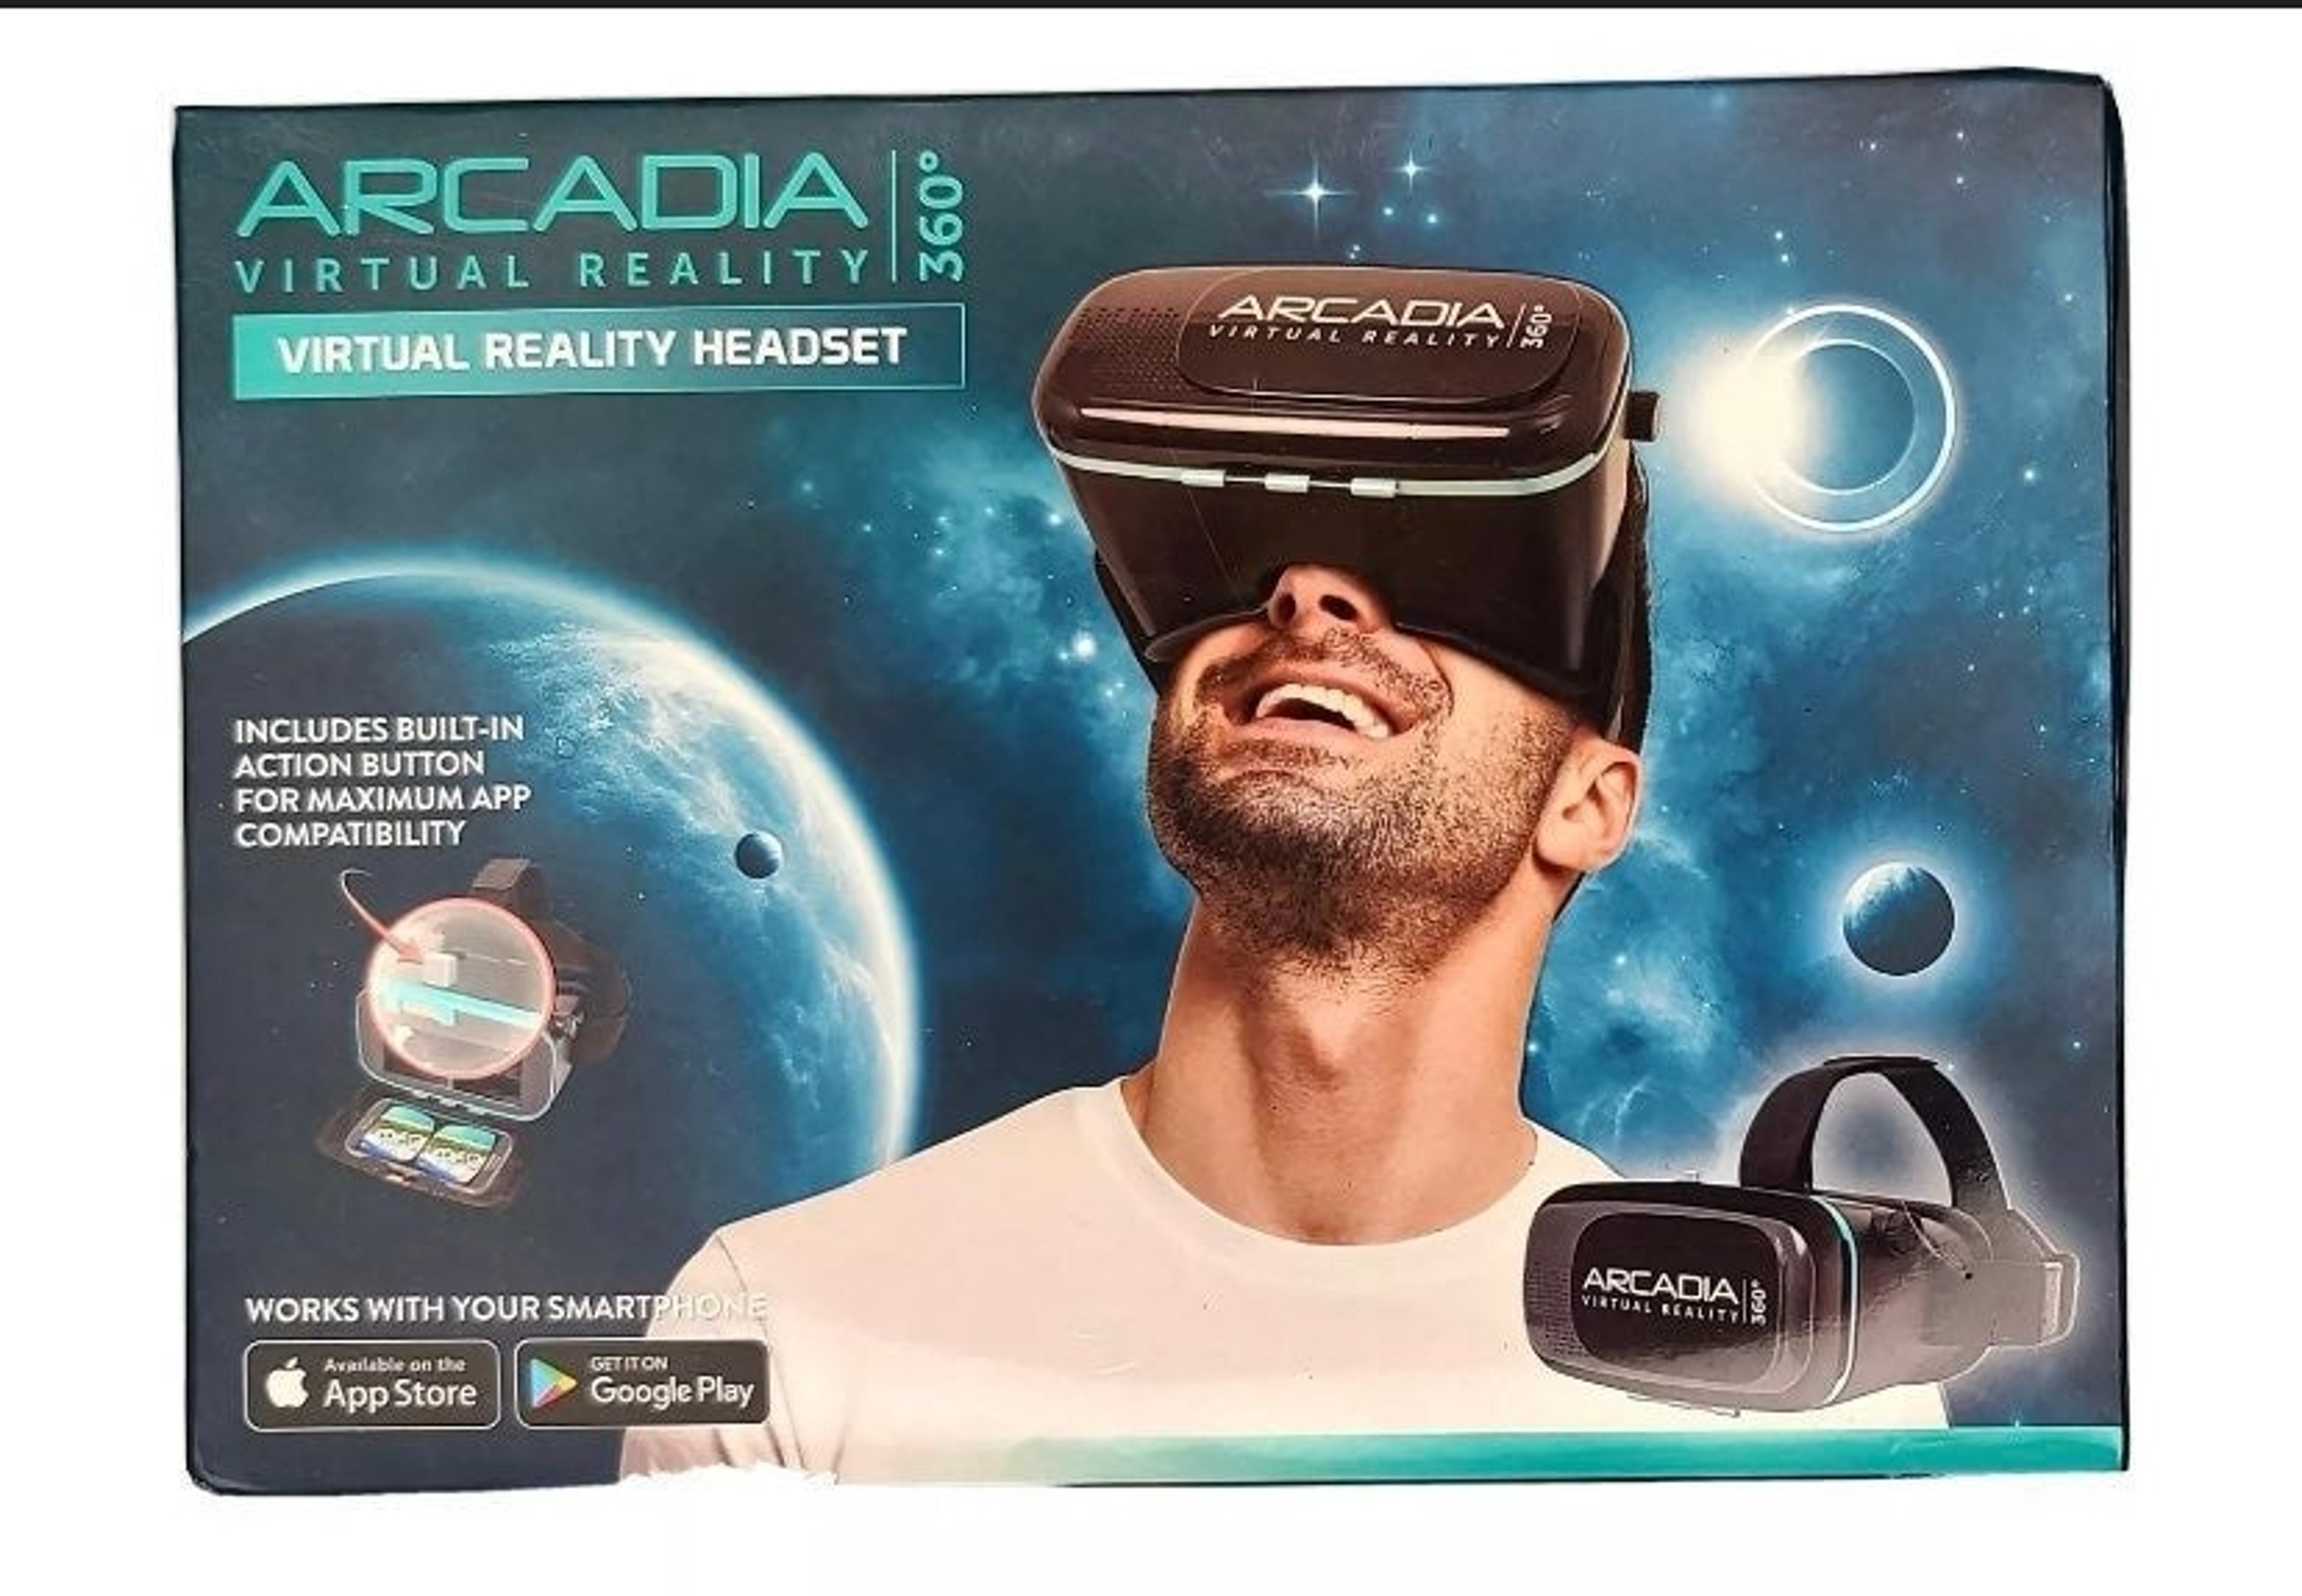 da bob recommends arcadia virtual reality 360 pic